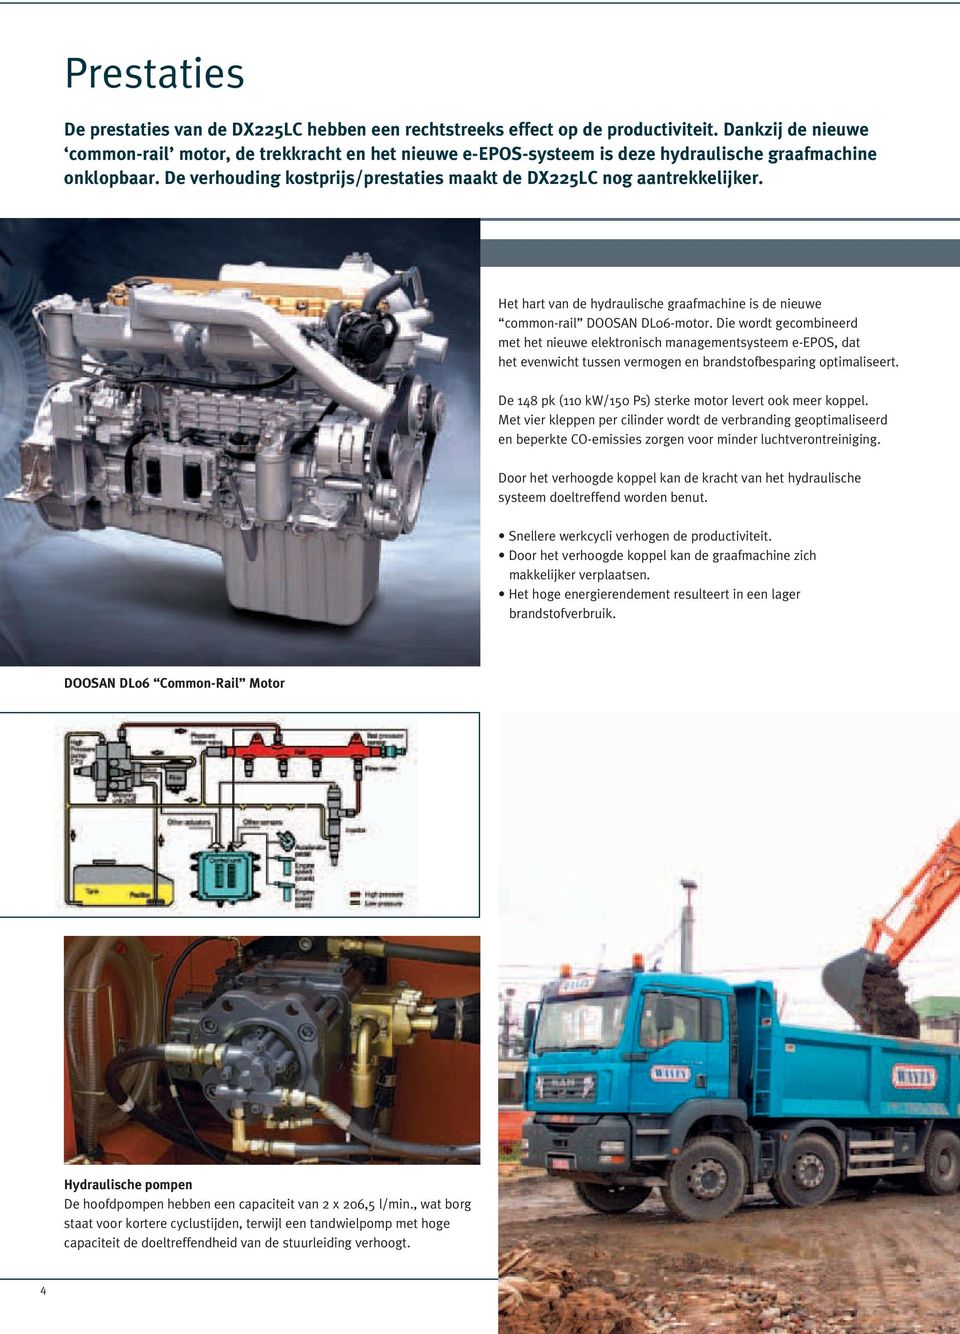 Het hart van de hydraulische graafmachine is de nieuwe coon-rail DOOSAN DL06-motor.